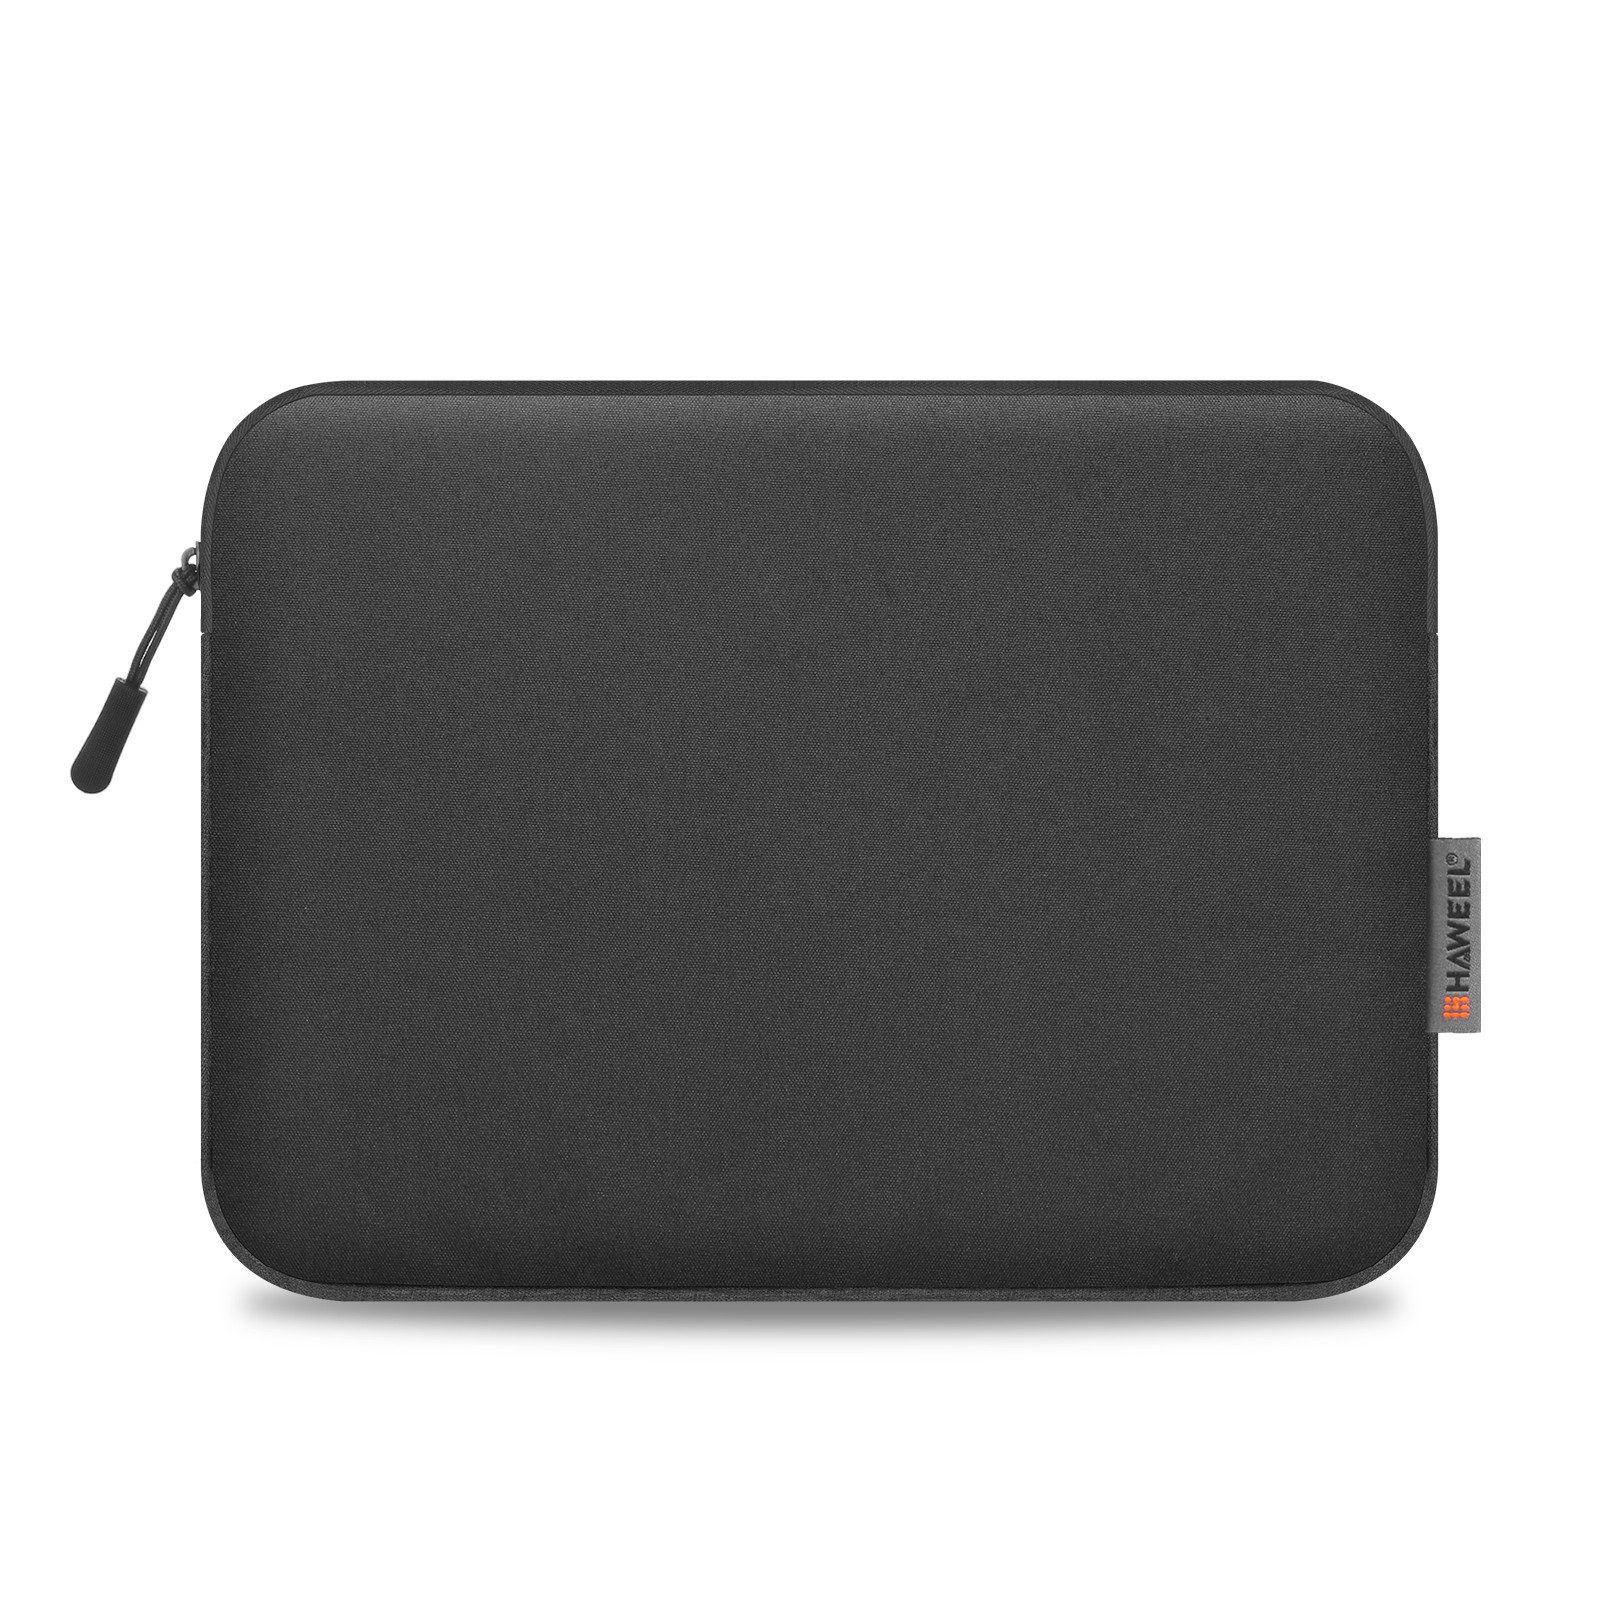 König Design Laptoptasche Universal Notebook Tablet Tasche 11-16,7 Zoll Tasche Hülle, Laptoptasche Розмір / Farbe wählbar